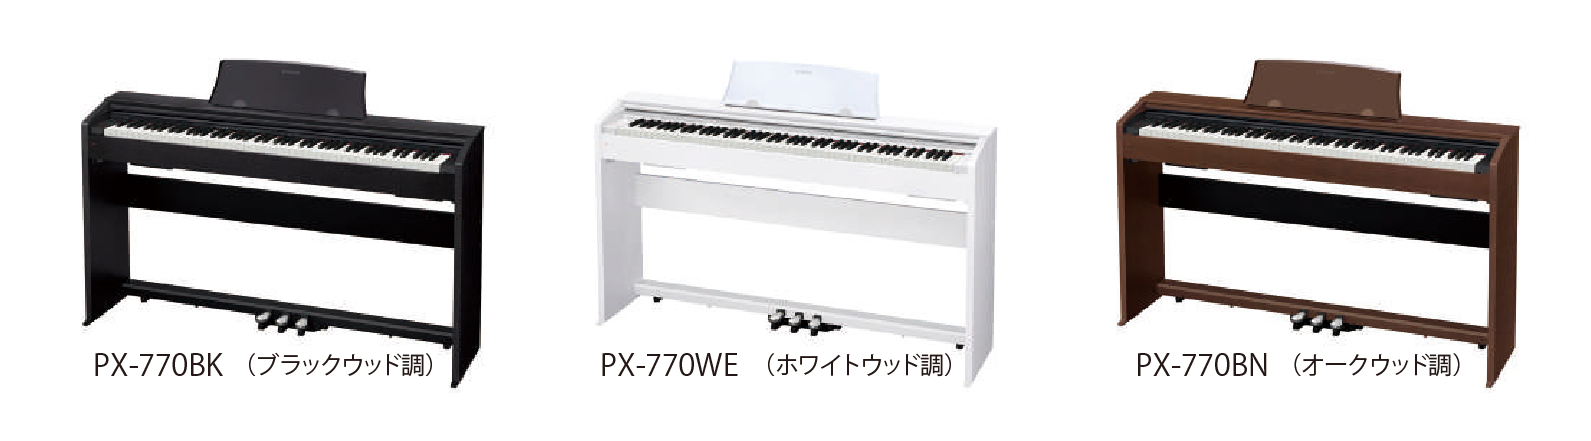 PX-770BK / PX-770WE / PX-770BN